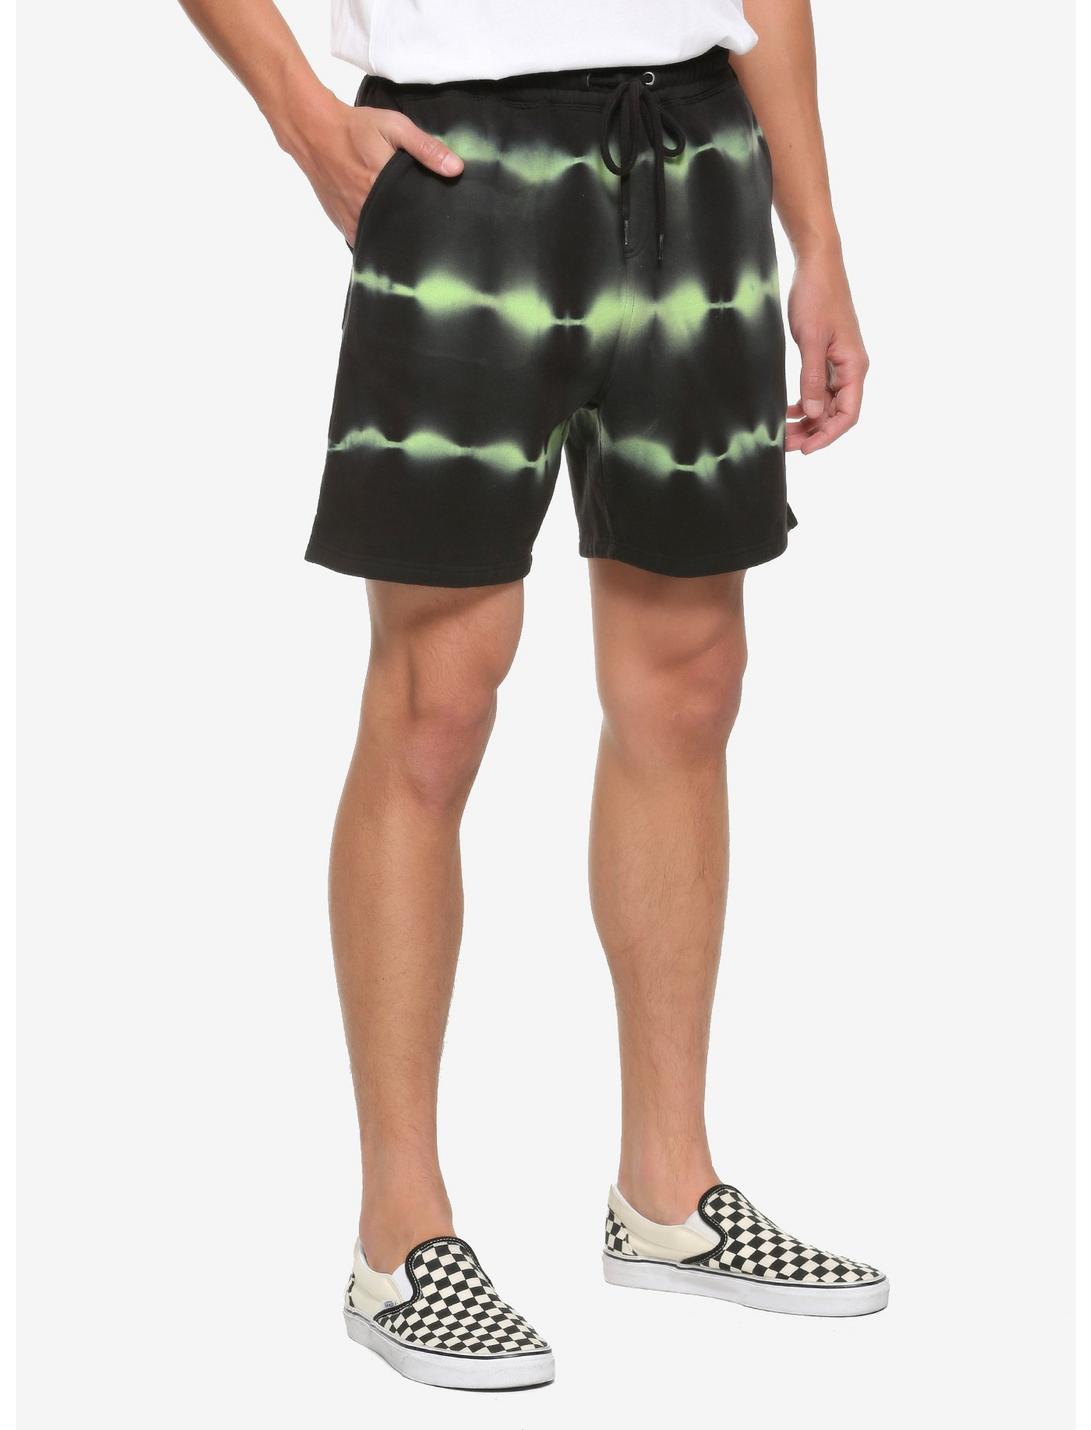 Green & Black Tie-Dye Jogger Shorts, TIE DYE, hi-res